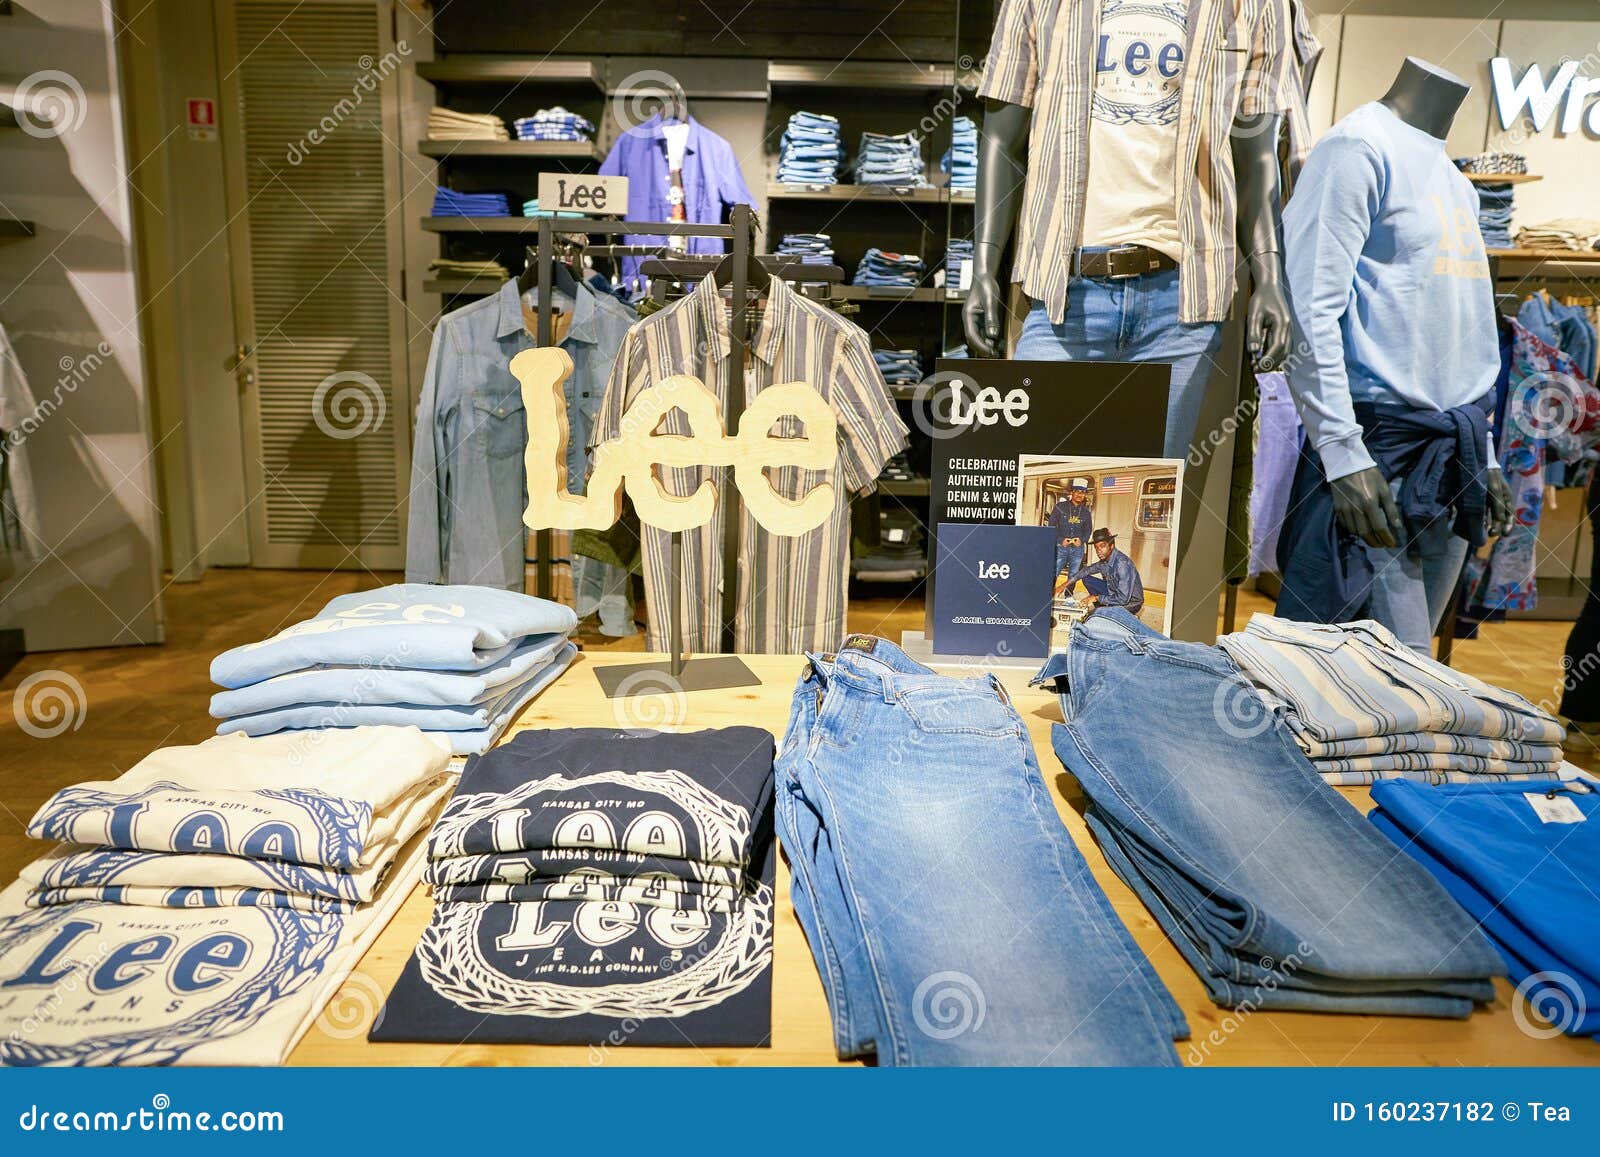 lee jeans shop